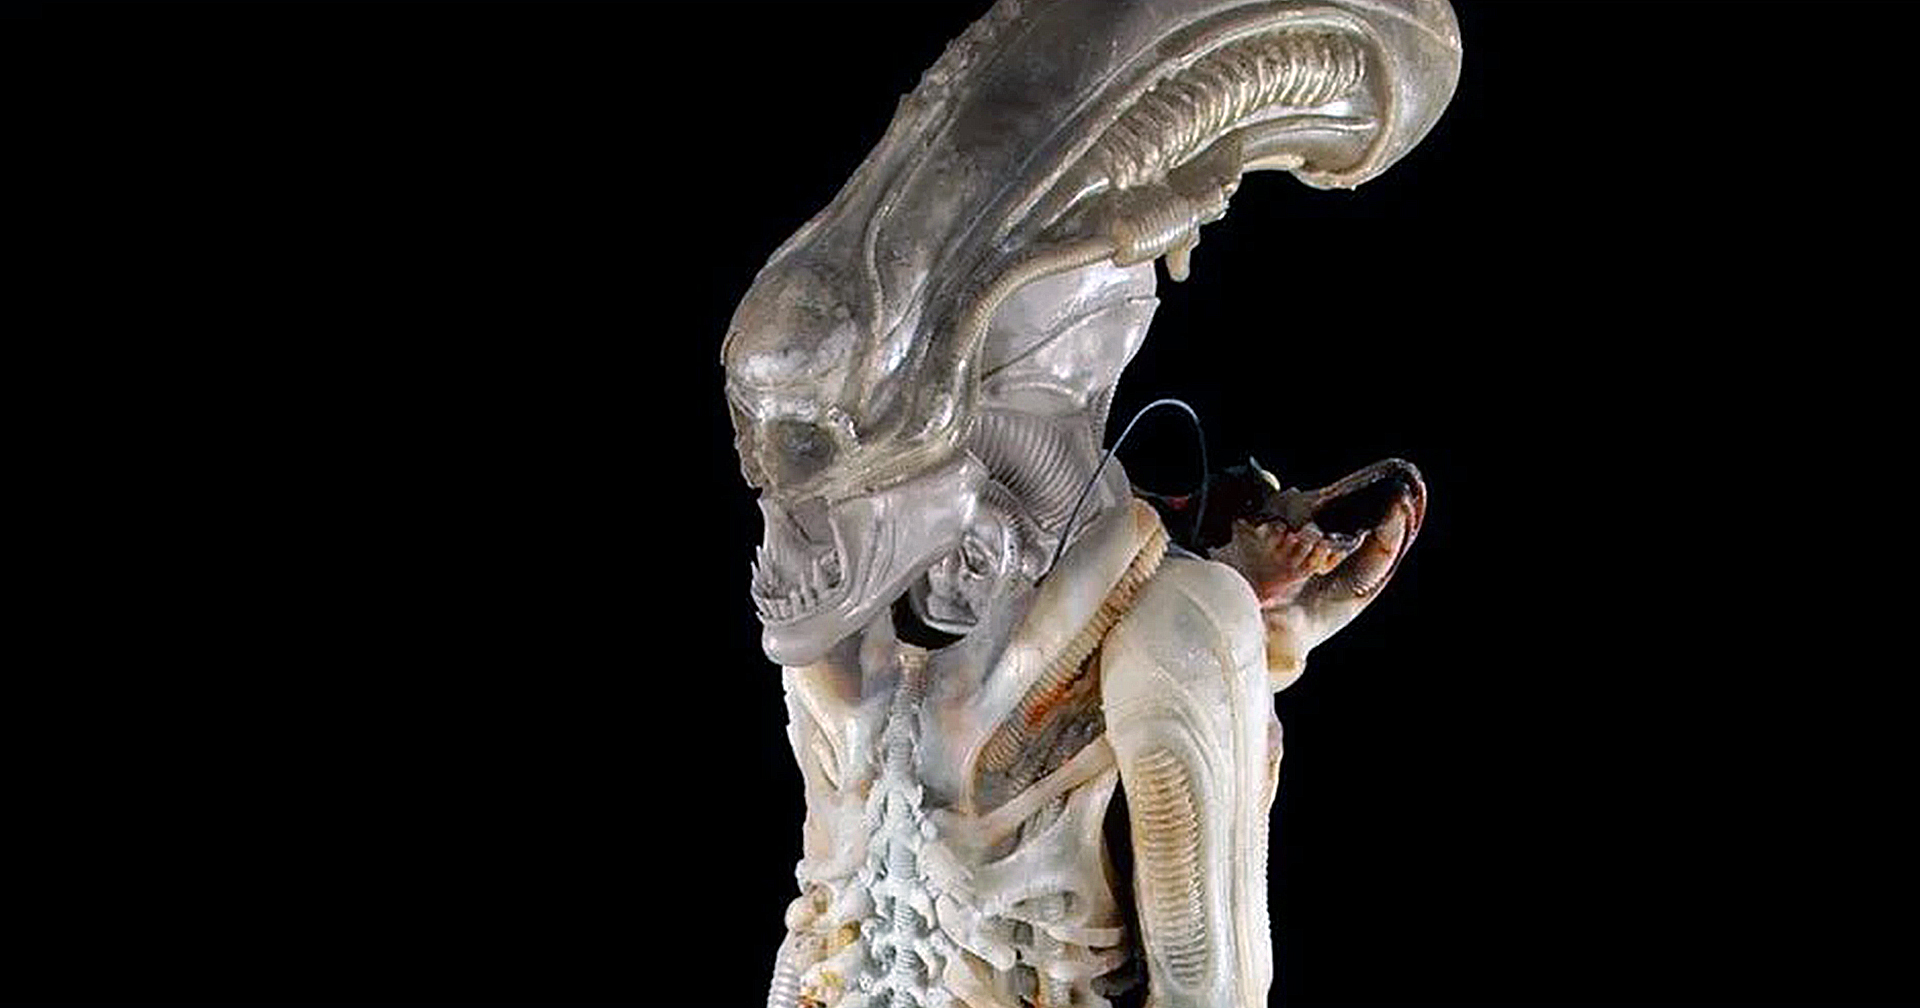 ชุด Xenomorph สุดหายากจากหนัง Alien ถูกนำมาประมูล : คาดอาจมีราคาสูงถึง 1.8 ล้านบาท